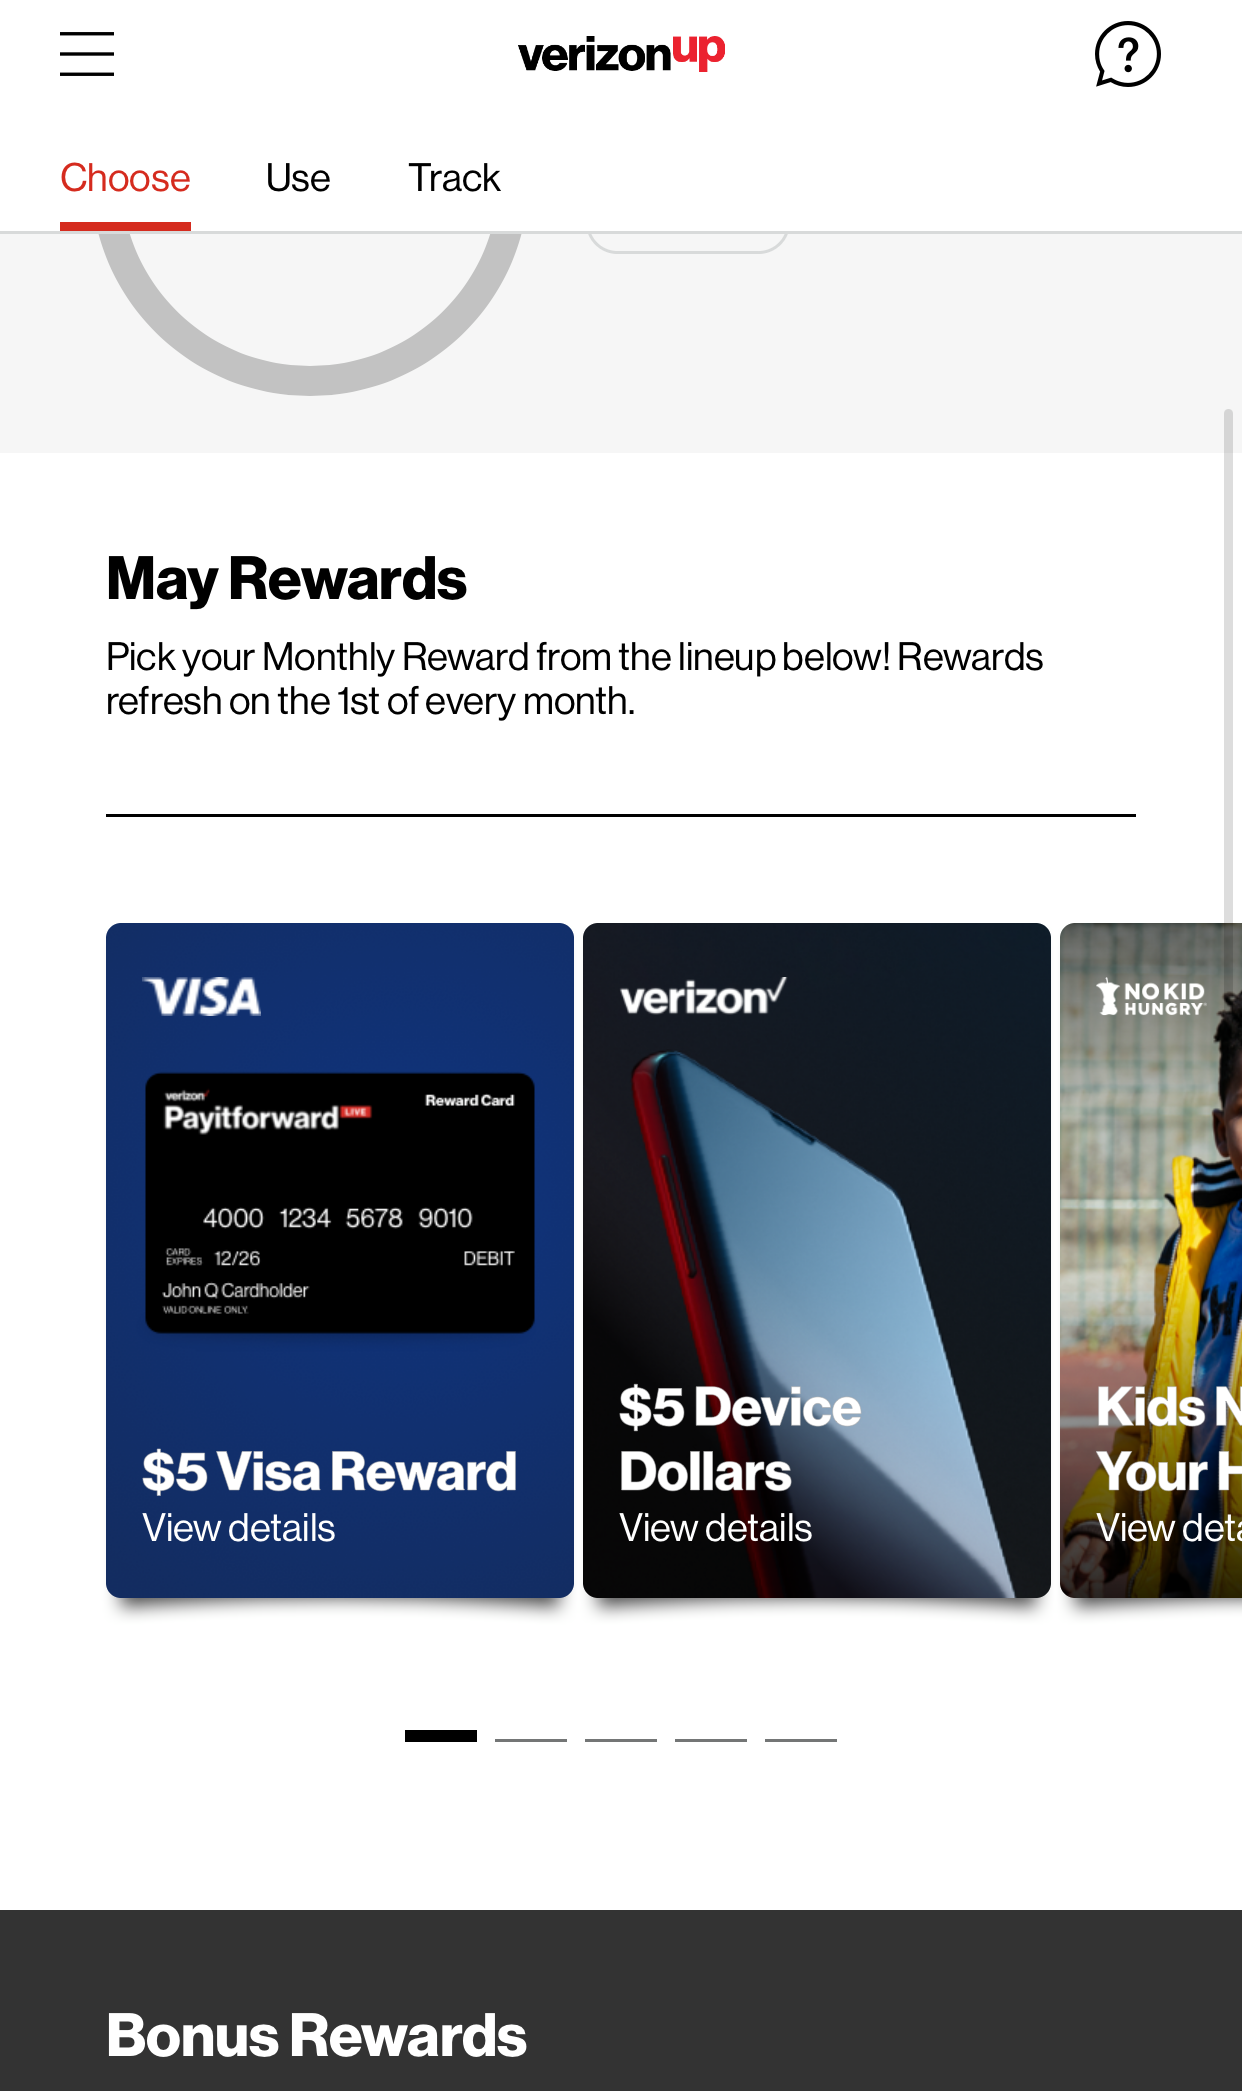 FREE $5 VISA Gift Card for Verizon Up Rewards Members